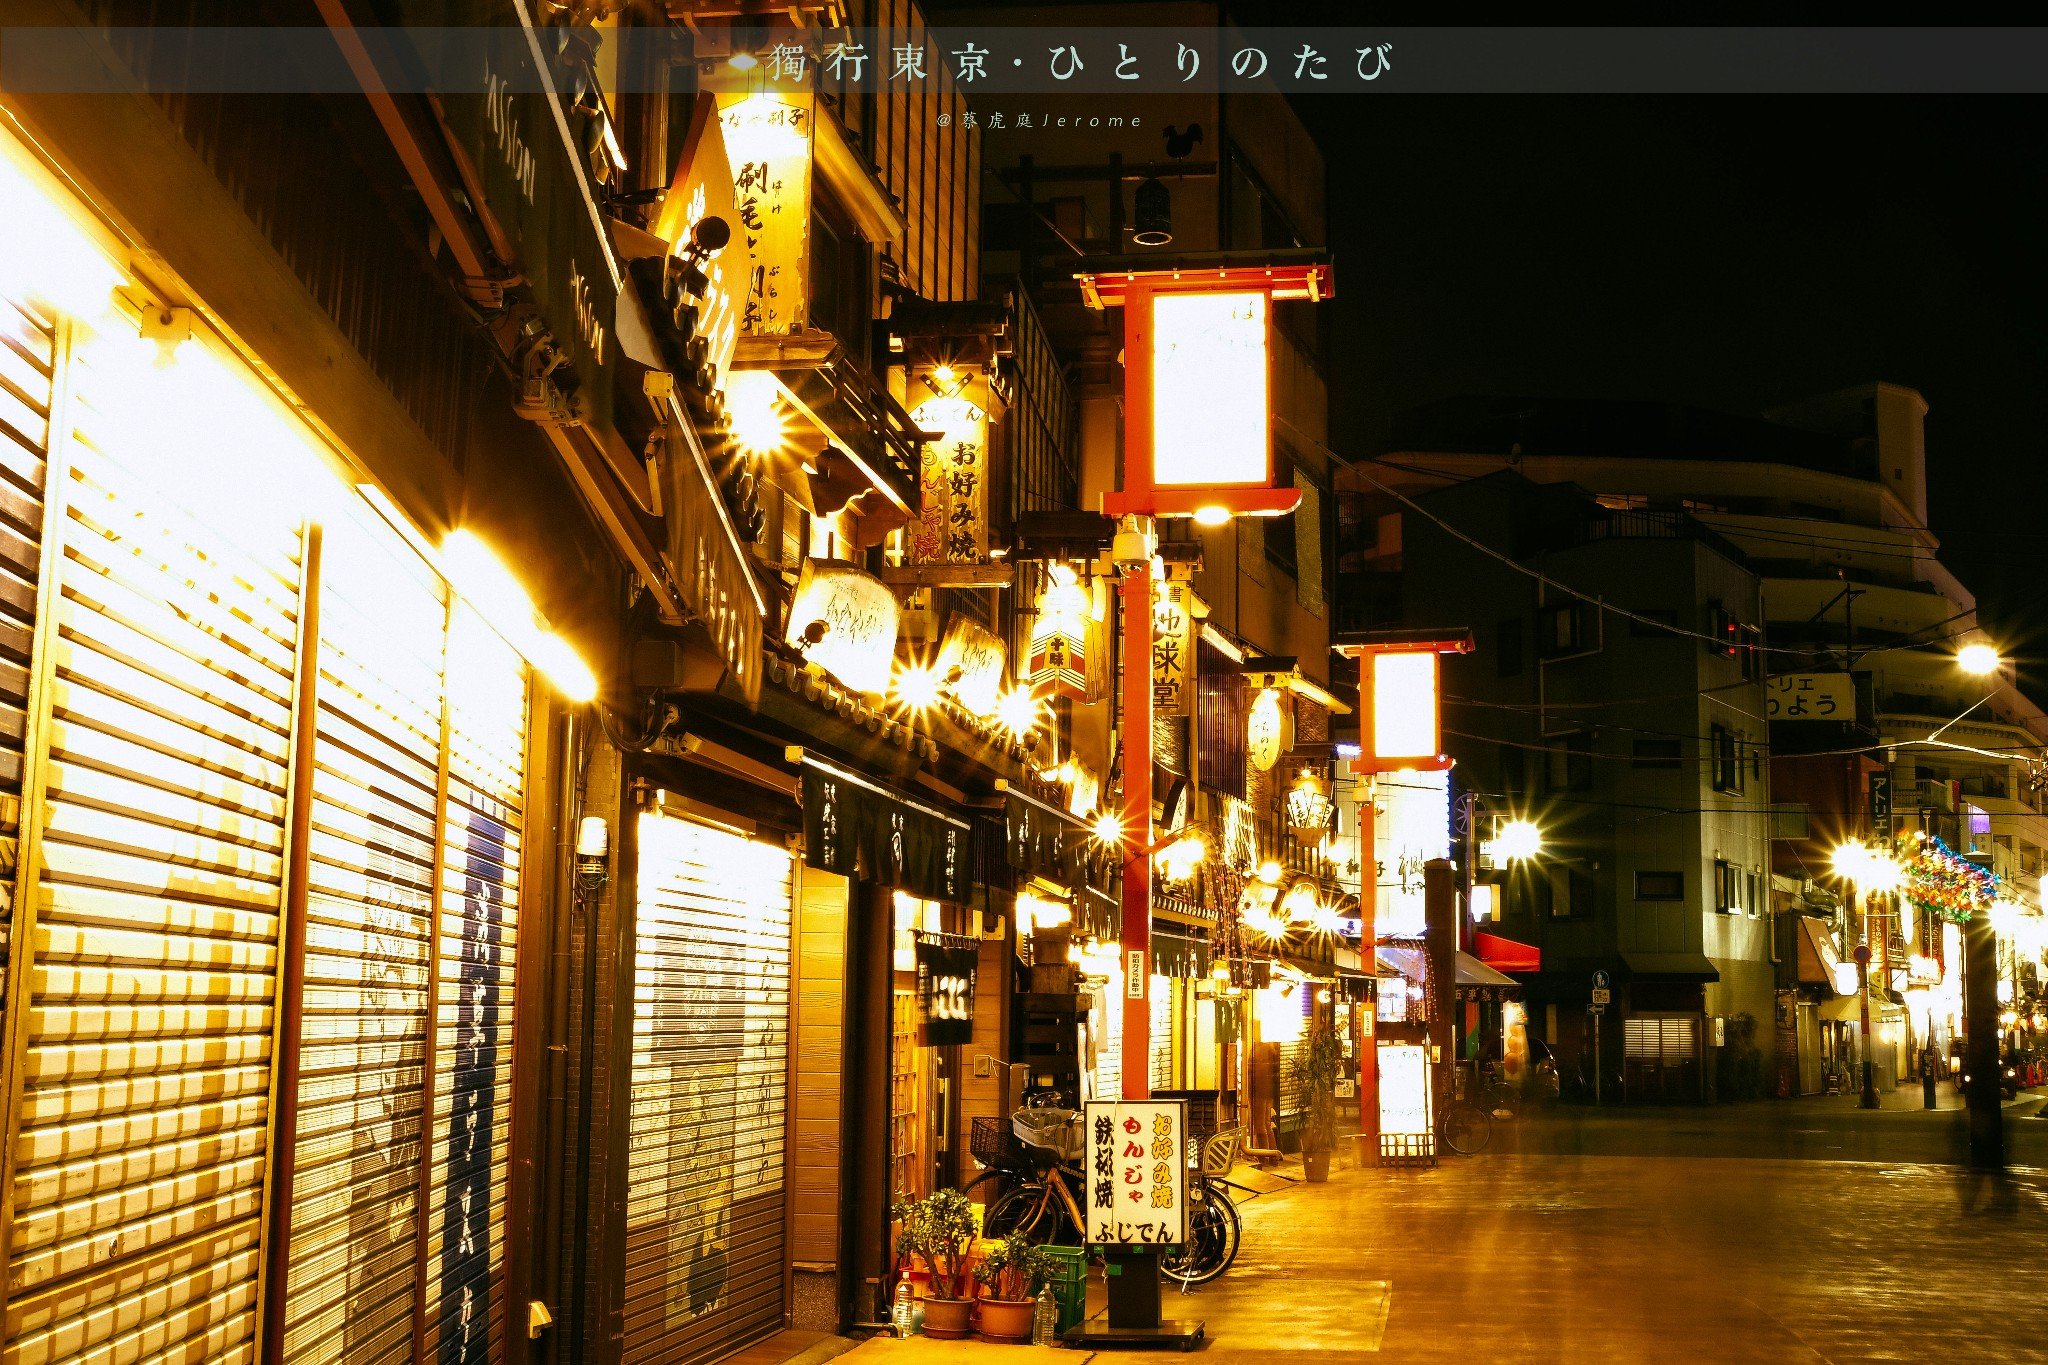 日本城市街道现代夜晚摄影图高清摄影大图-千库网